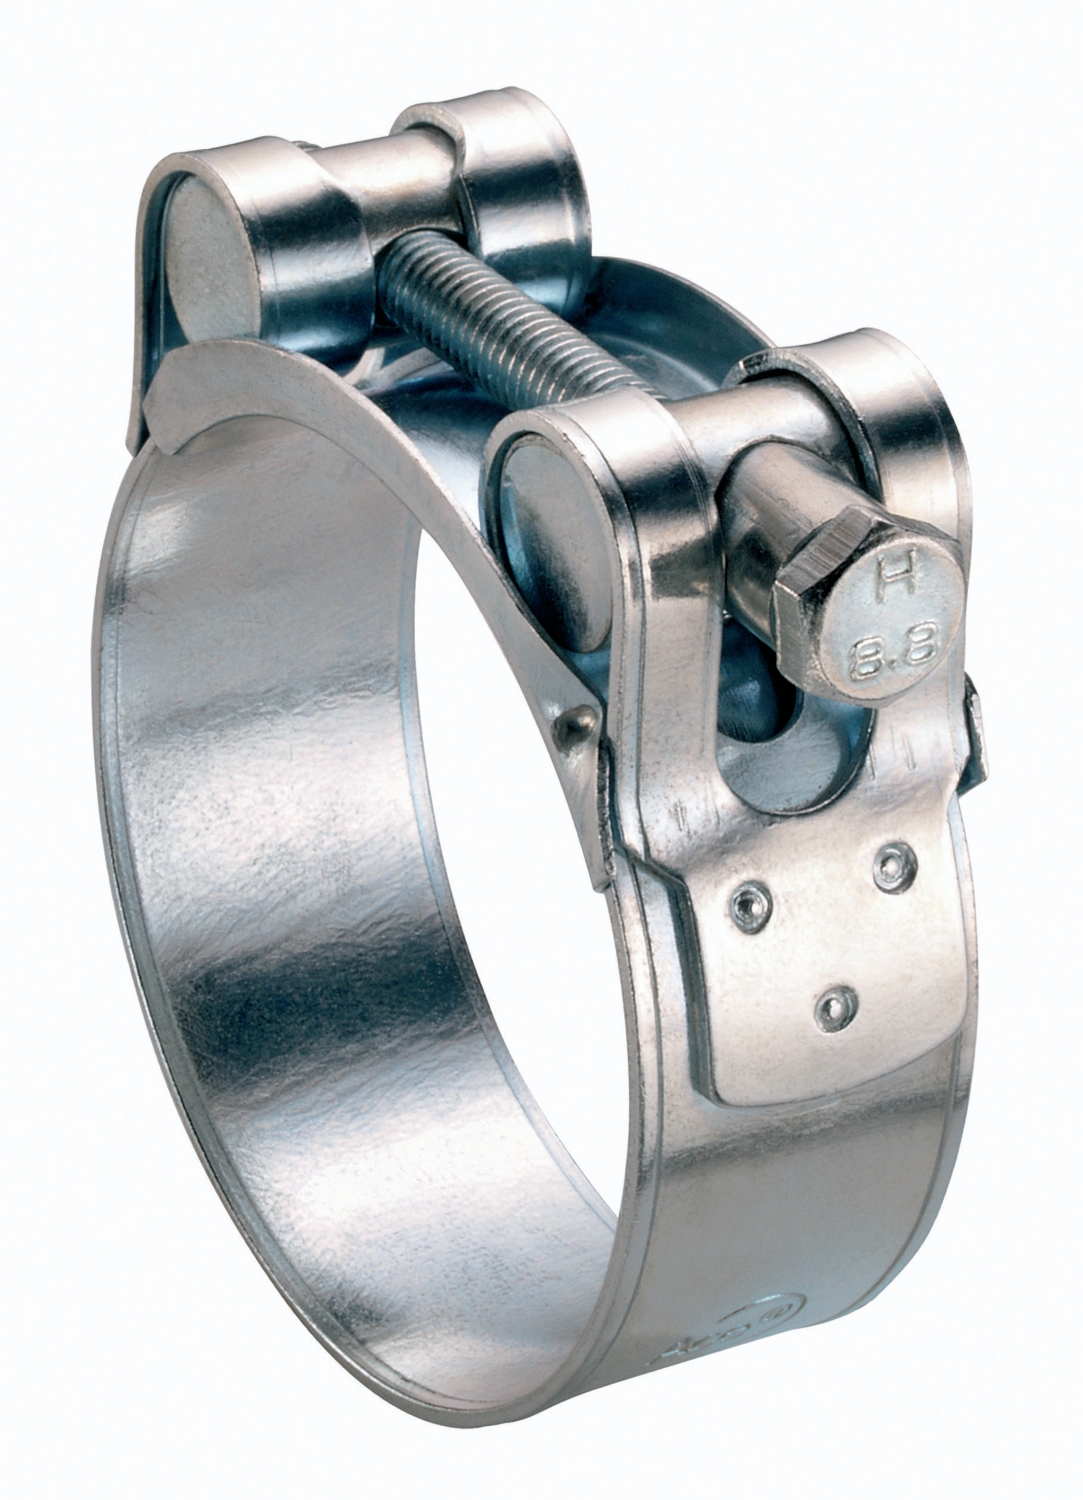 Collier de serrage en inox - Taille : 60-270 mm